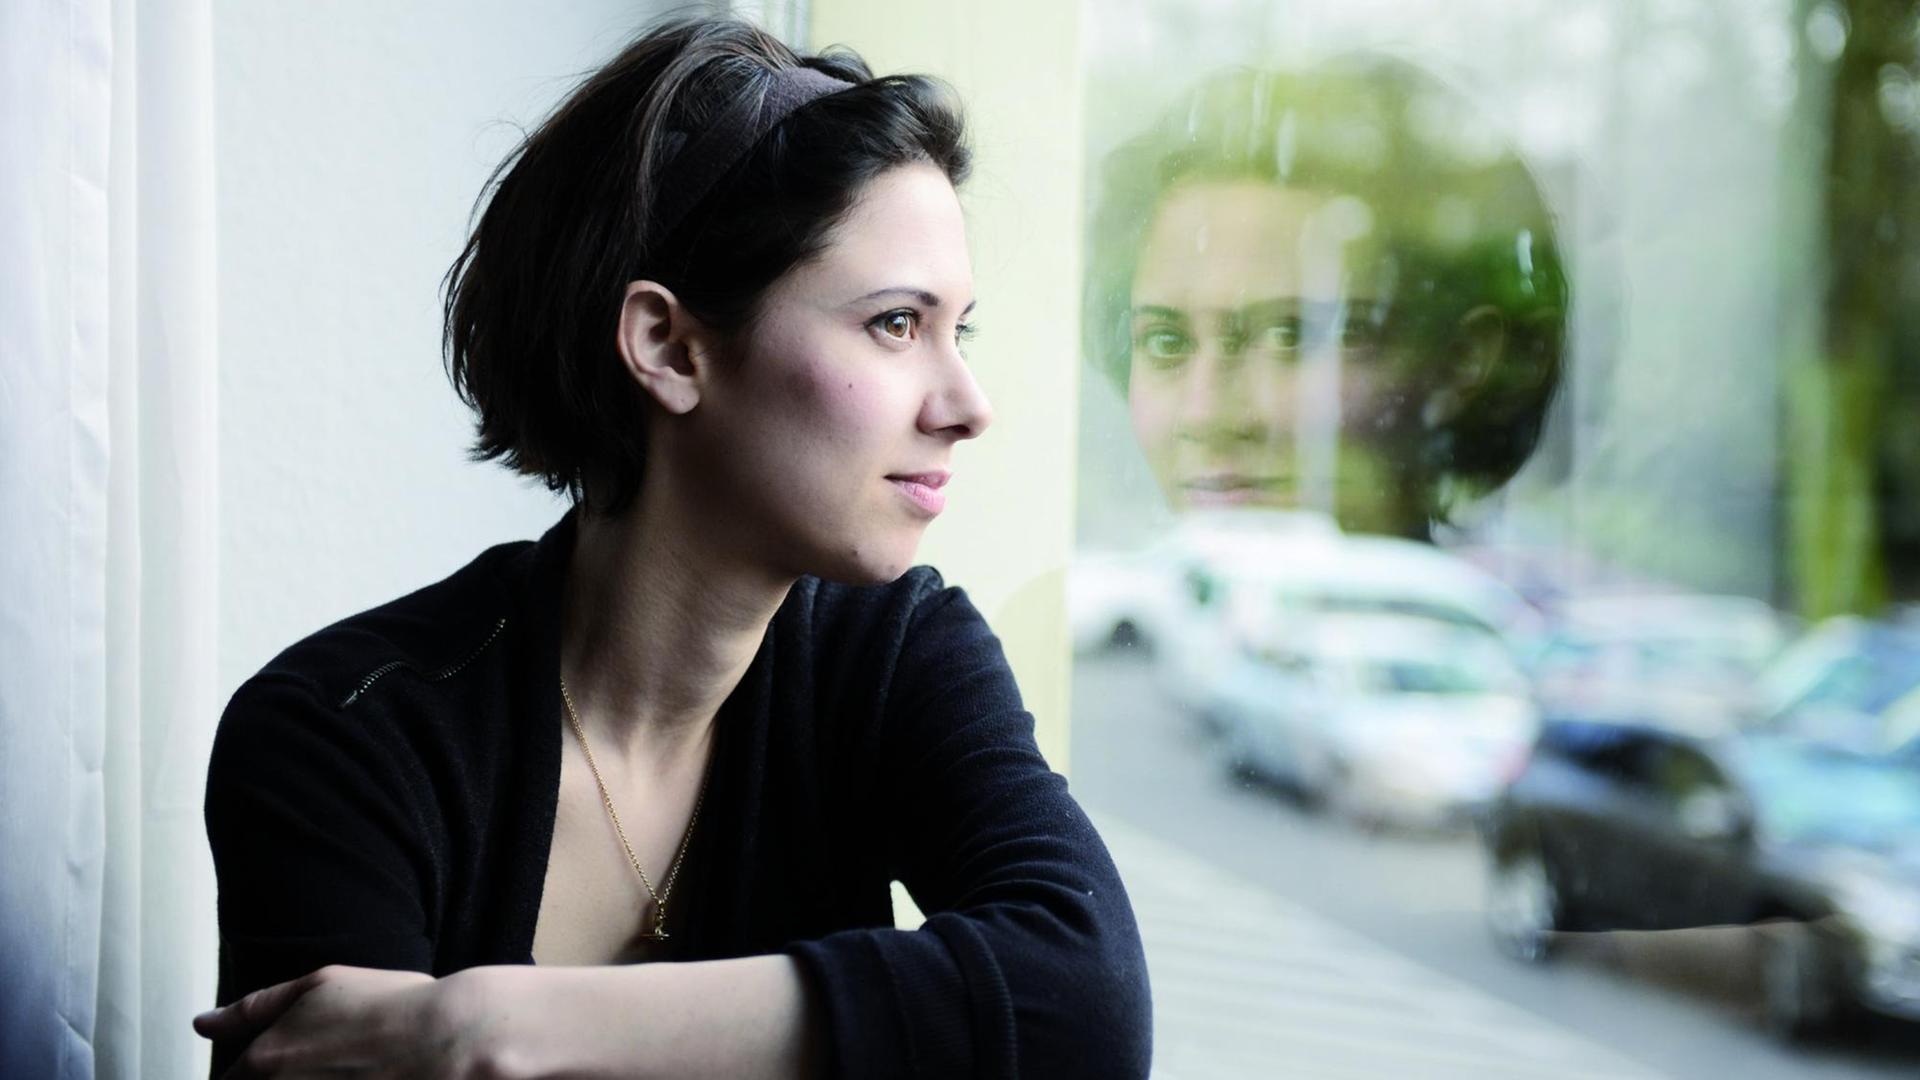 Die Pianistin Olivia Trummer schaut aus einem Fenster, in dem sich ihr Blick wiederspiegelt